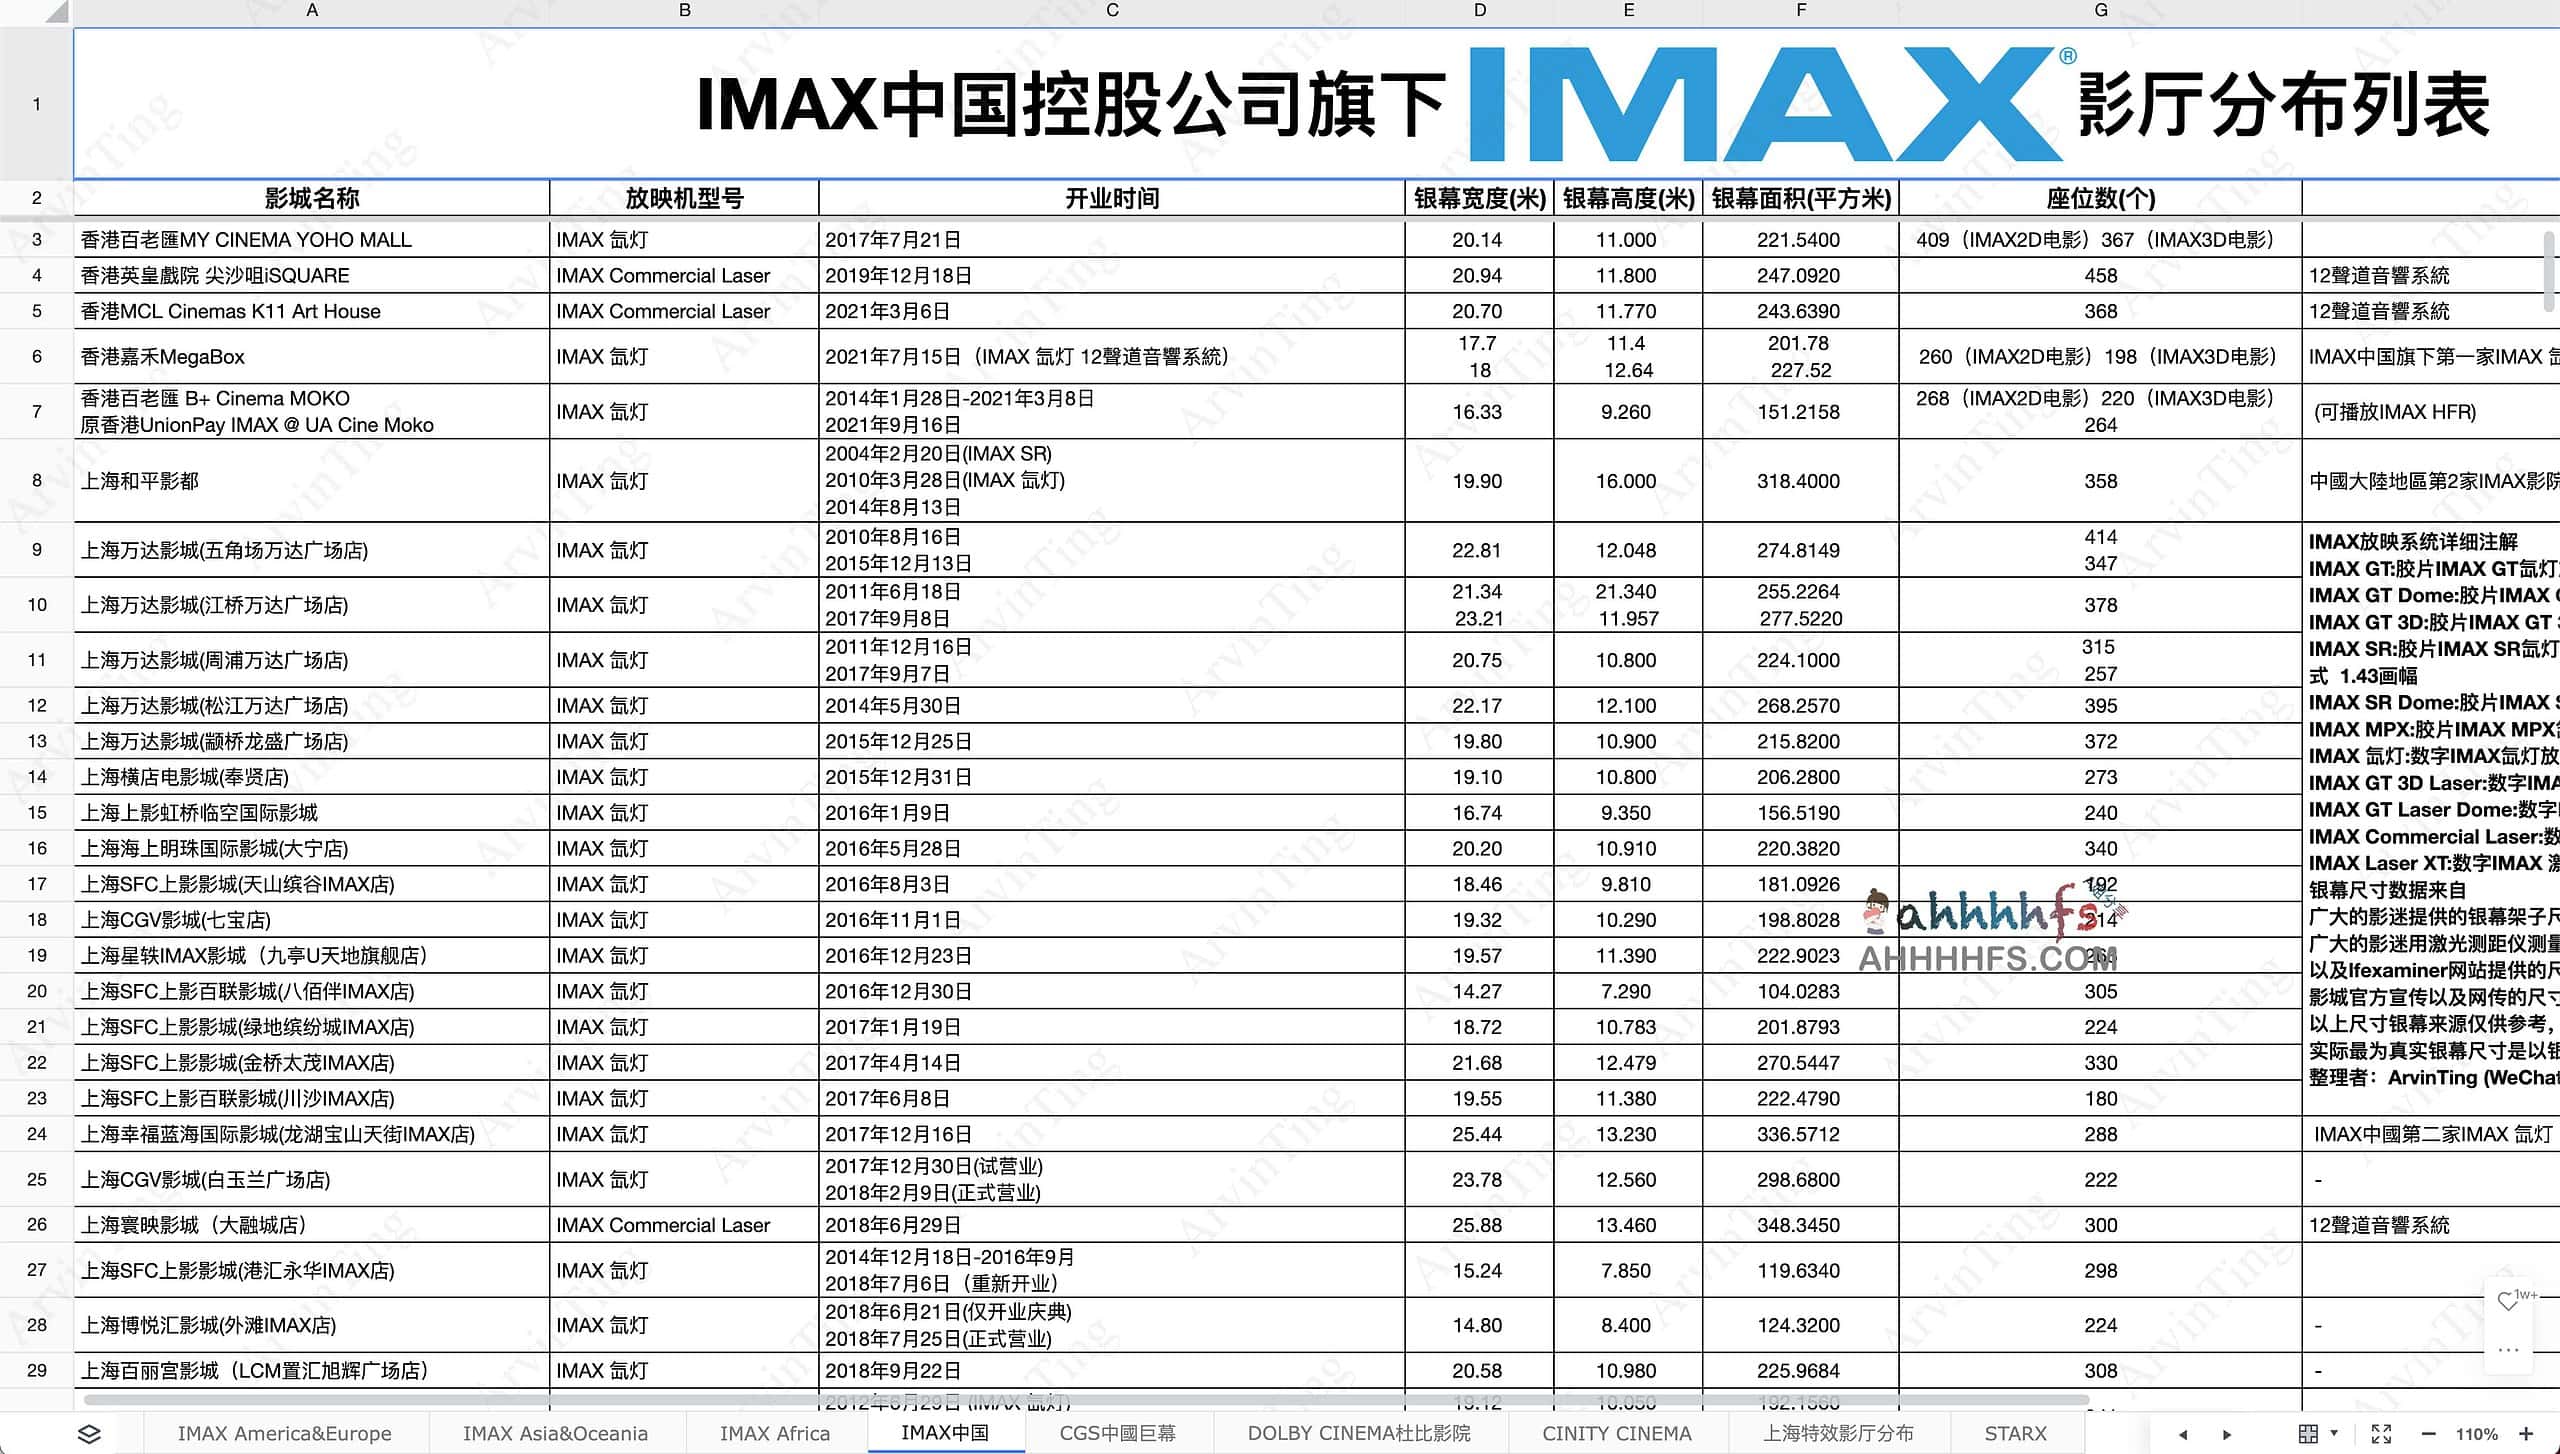 全球IMAX及其他系统影厅分布 实时更新-推荐收藏